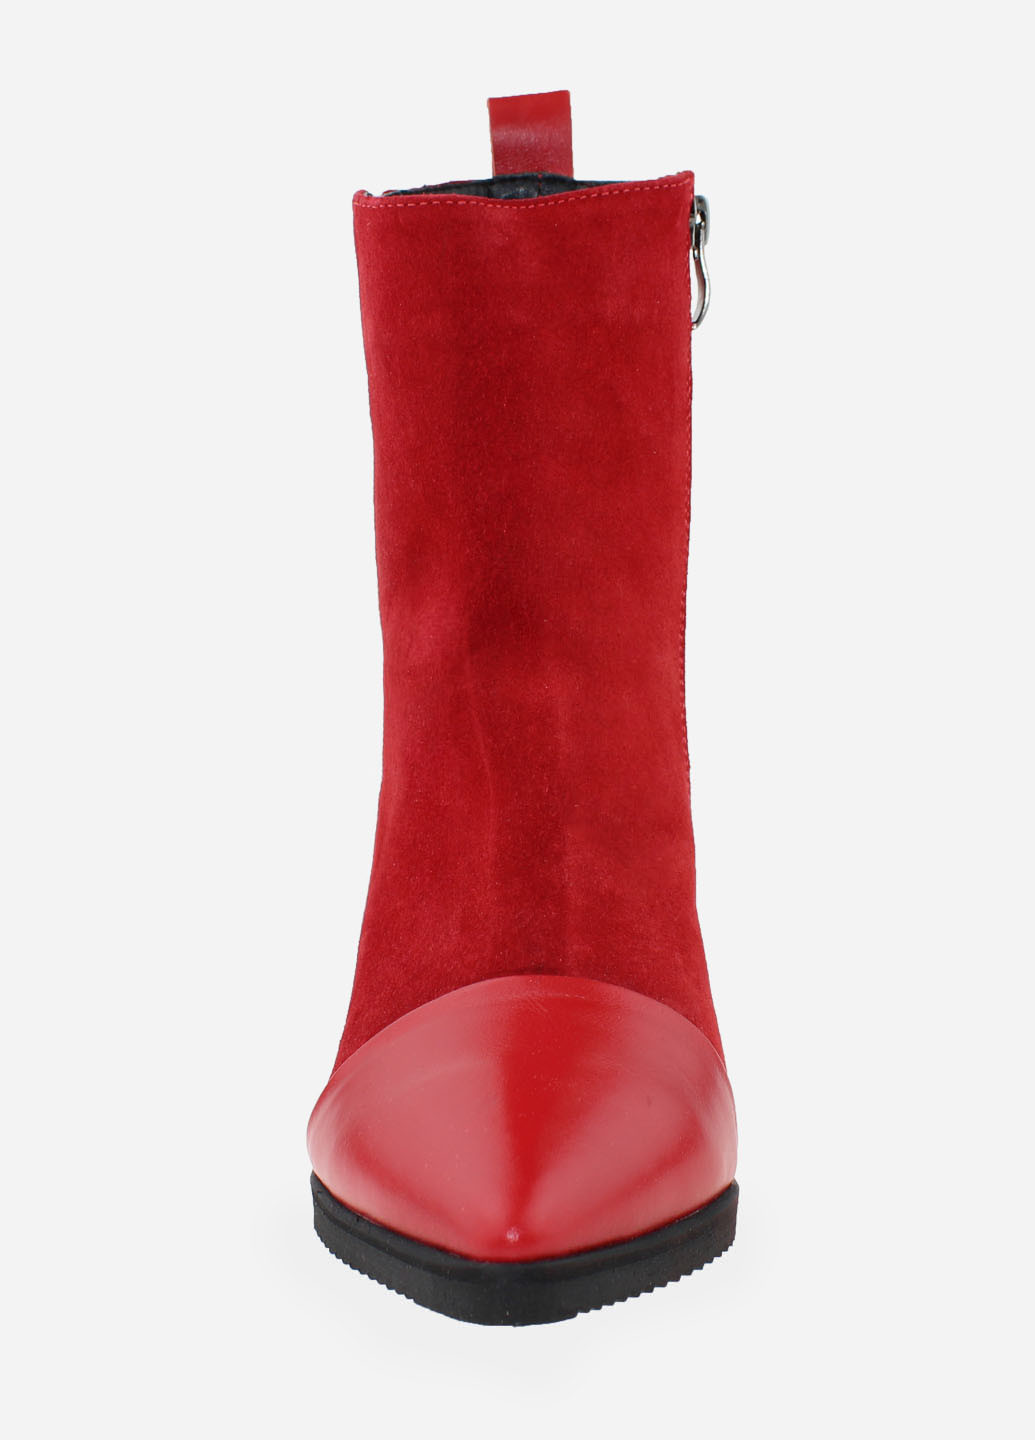 Осенние ботинки rc0151 красный Crisma из натуральной замши